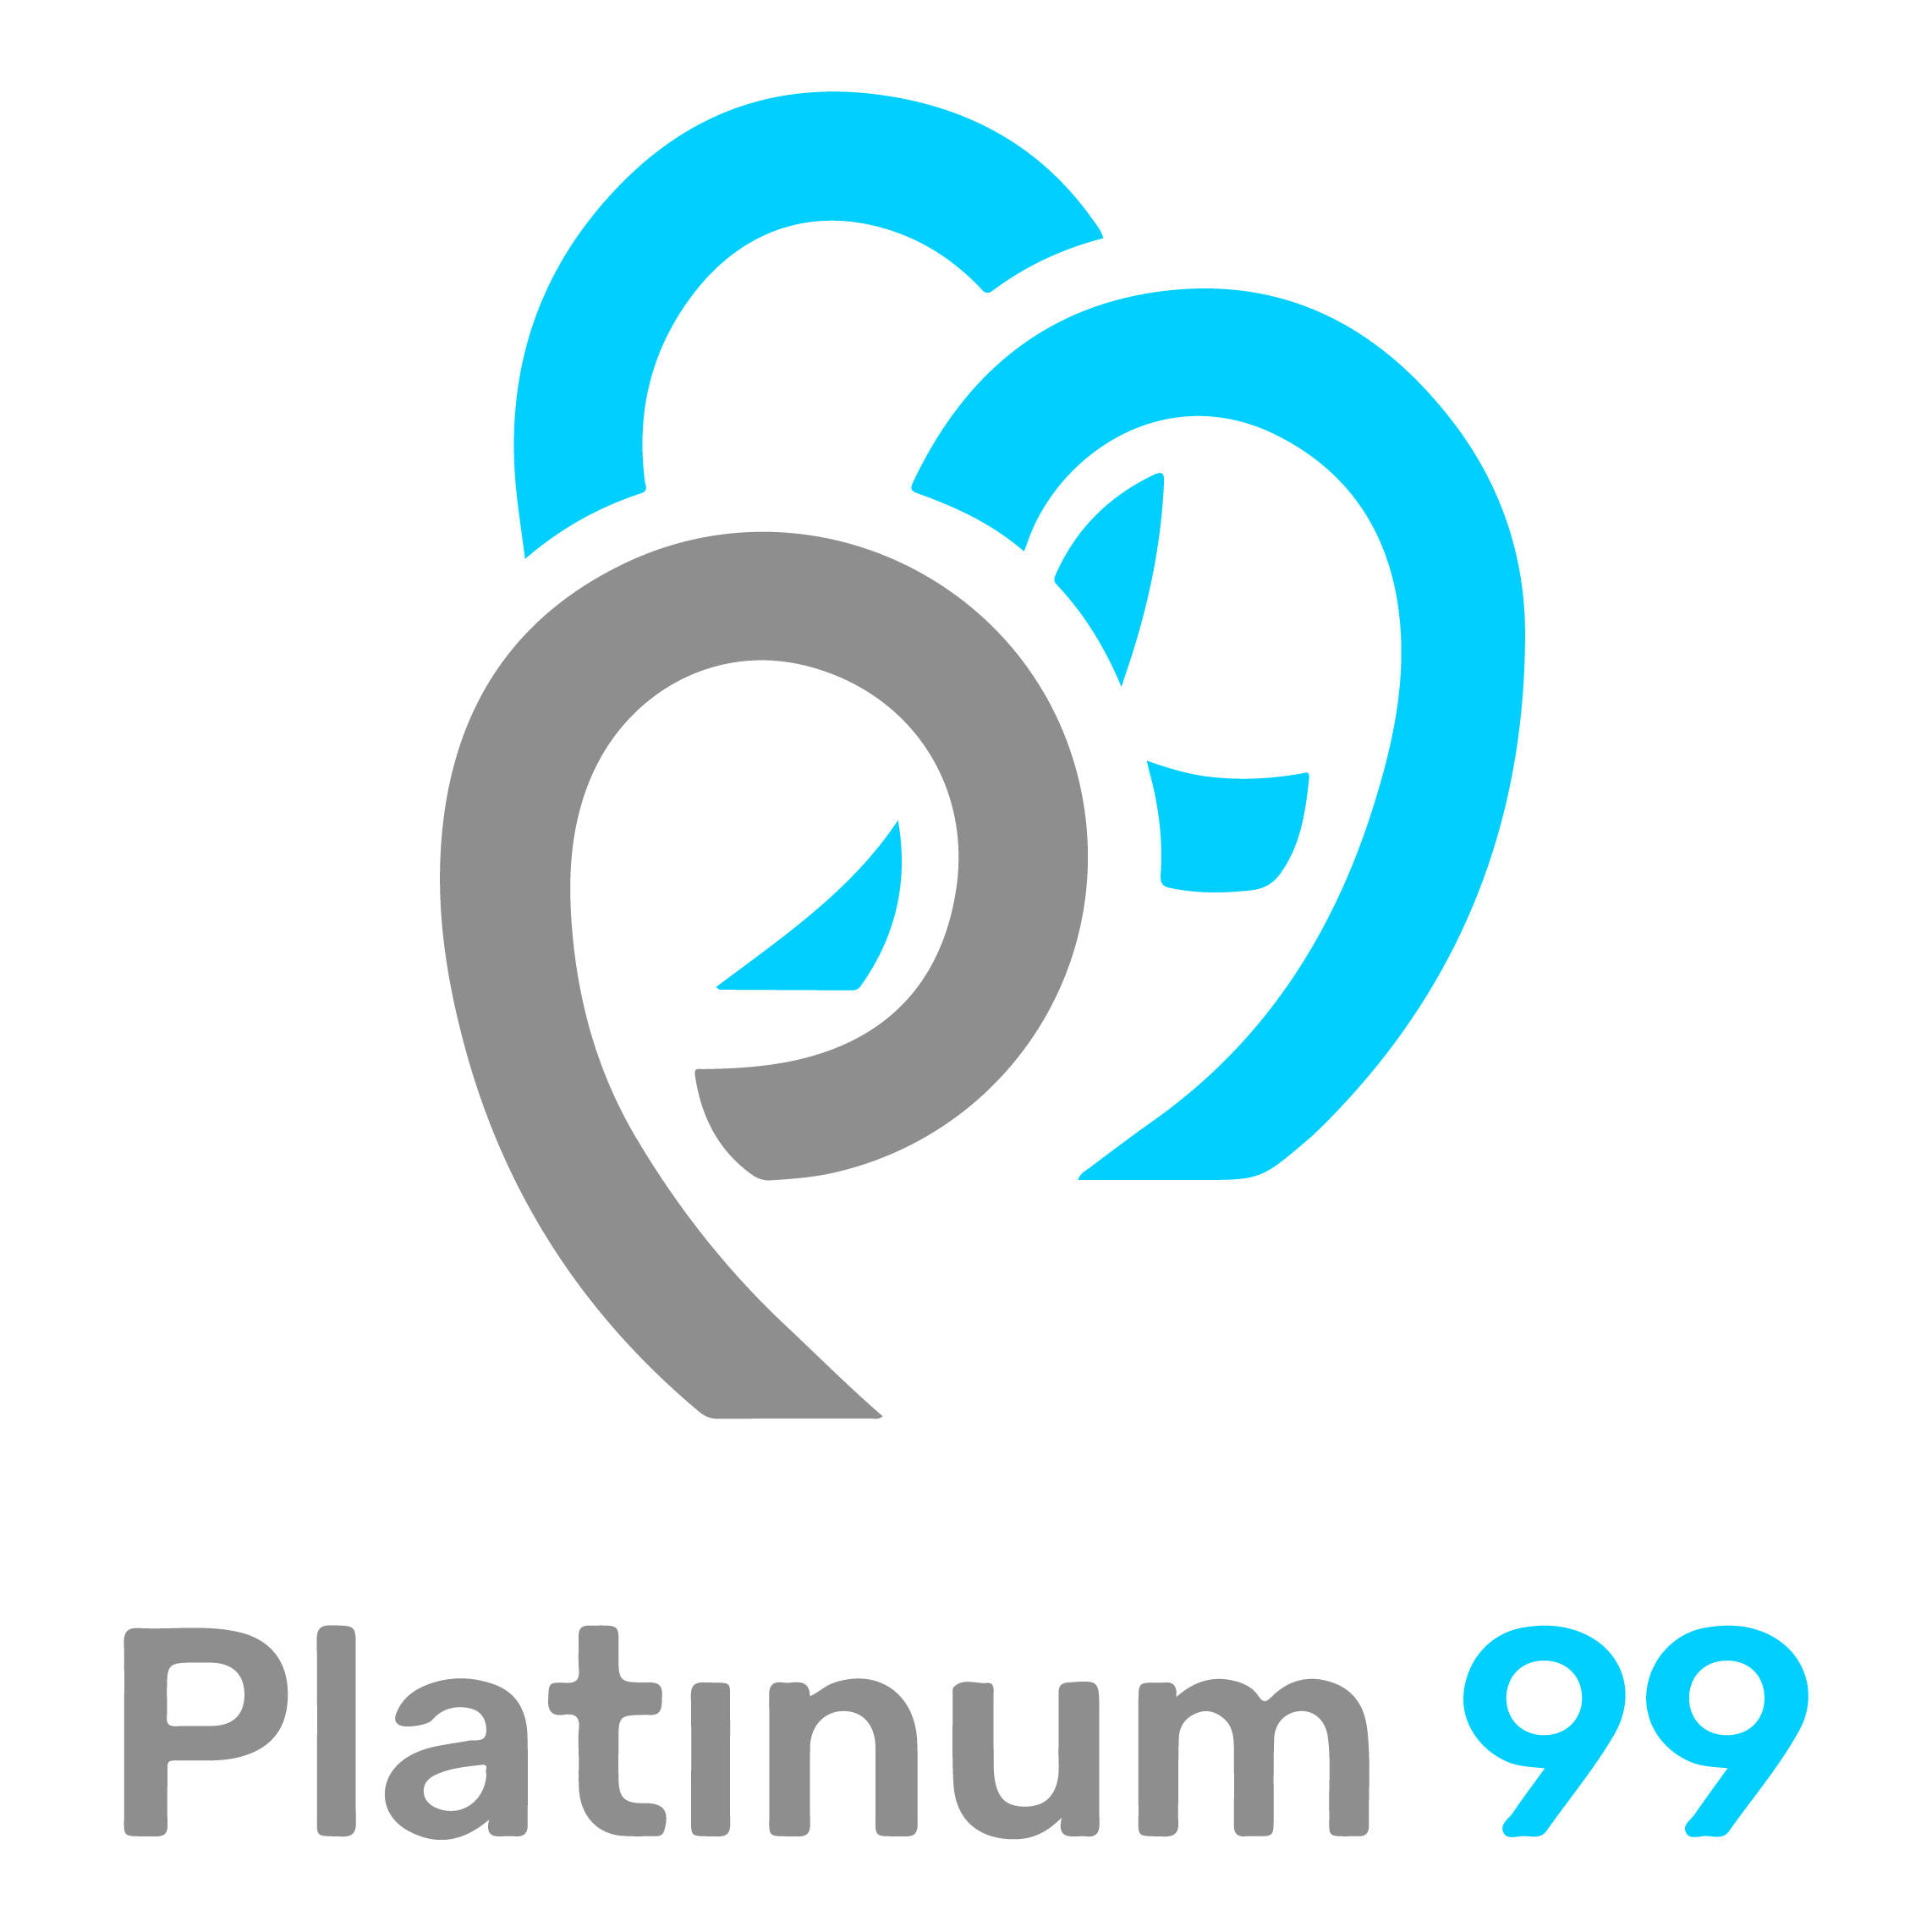 Platinum-99-Logo restaurant bar café